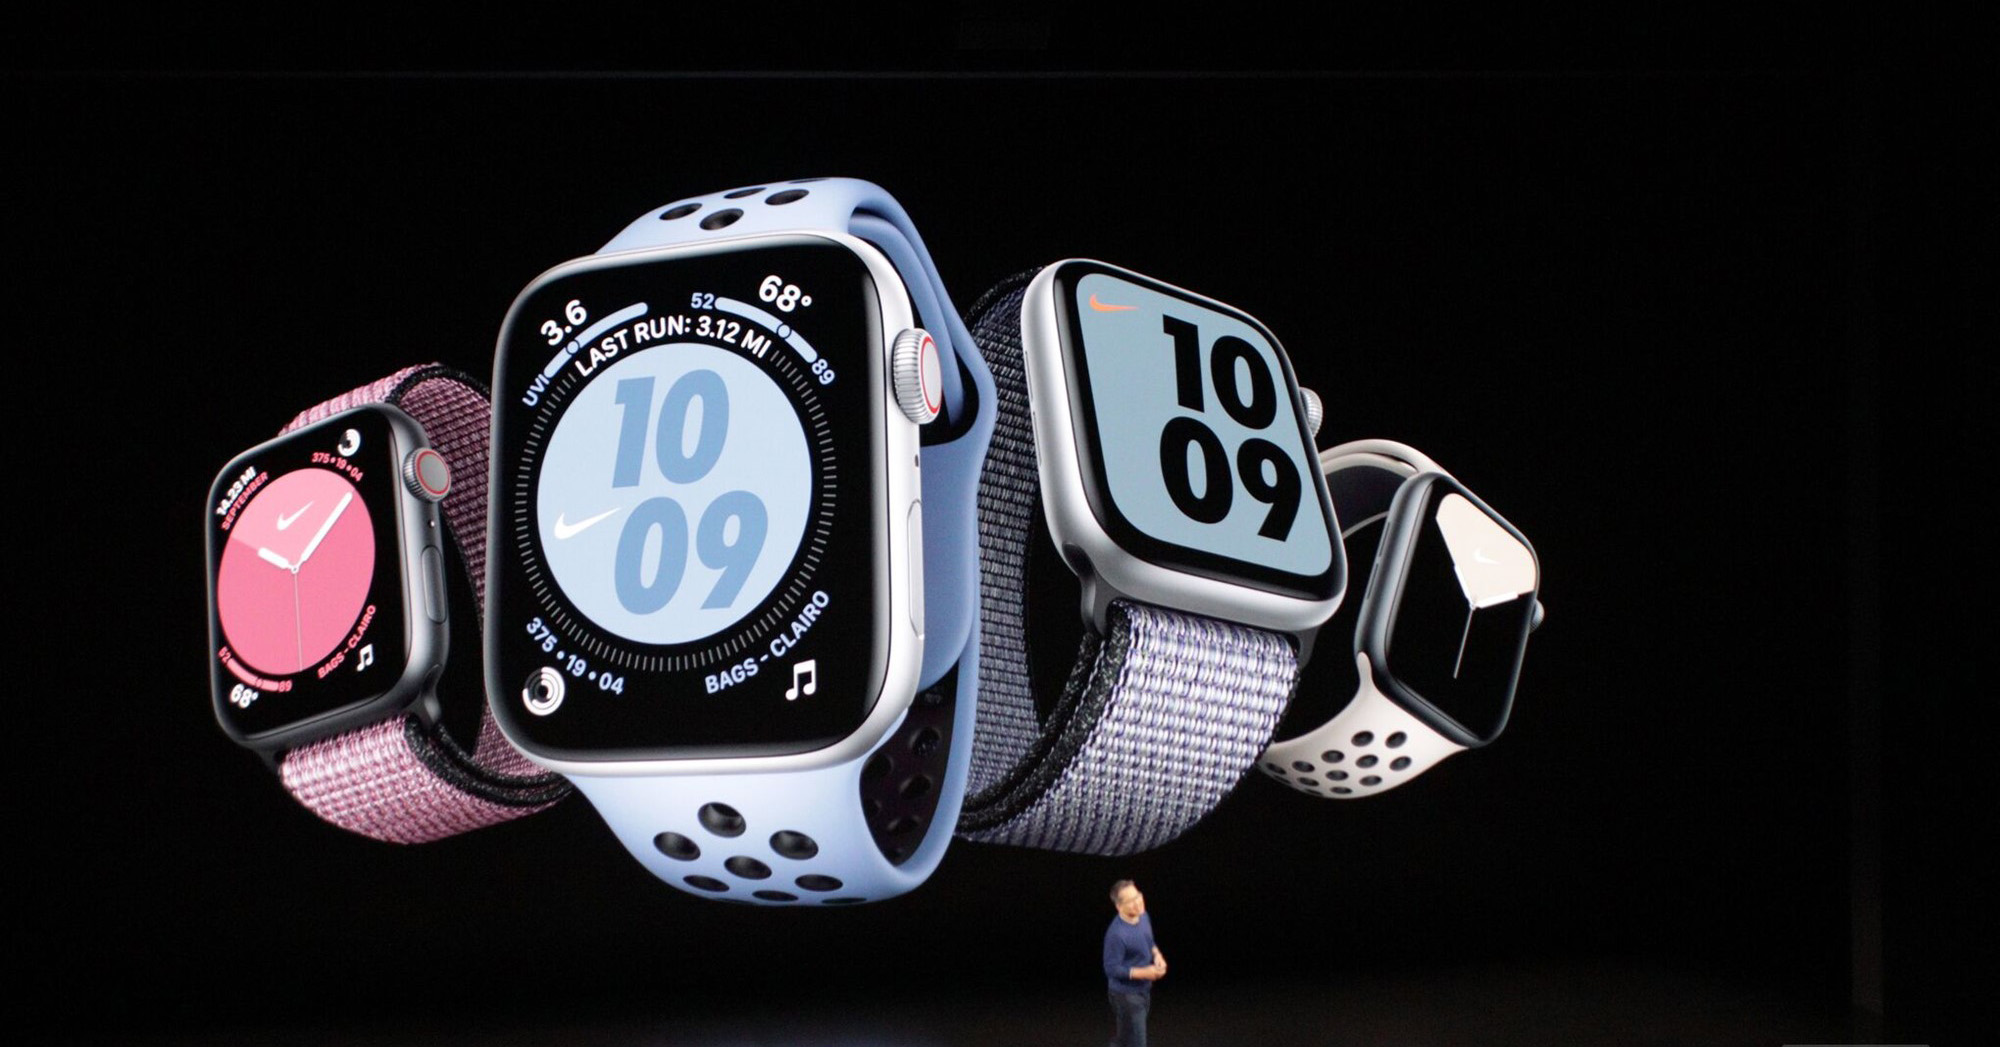 Apple Watch Series 5 chính hãng 44mm (GPS) Nhôm cũ - Fullbox 99%